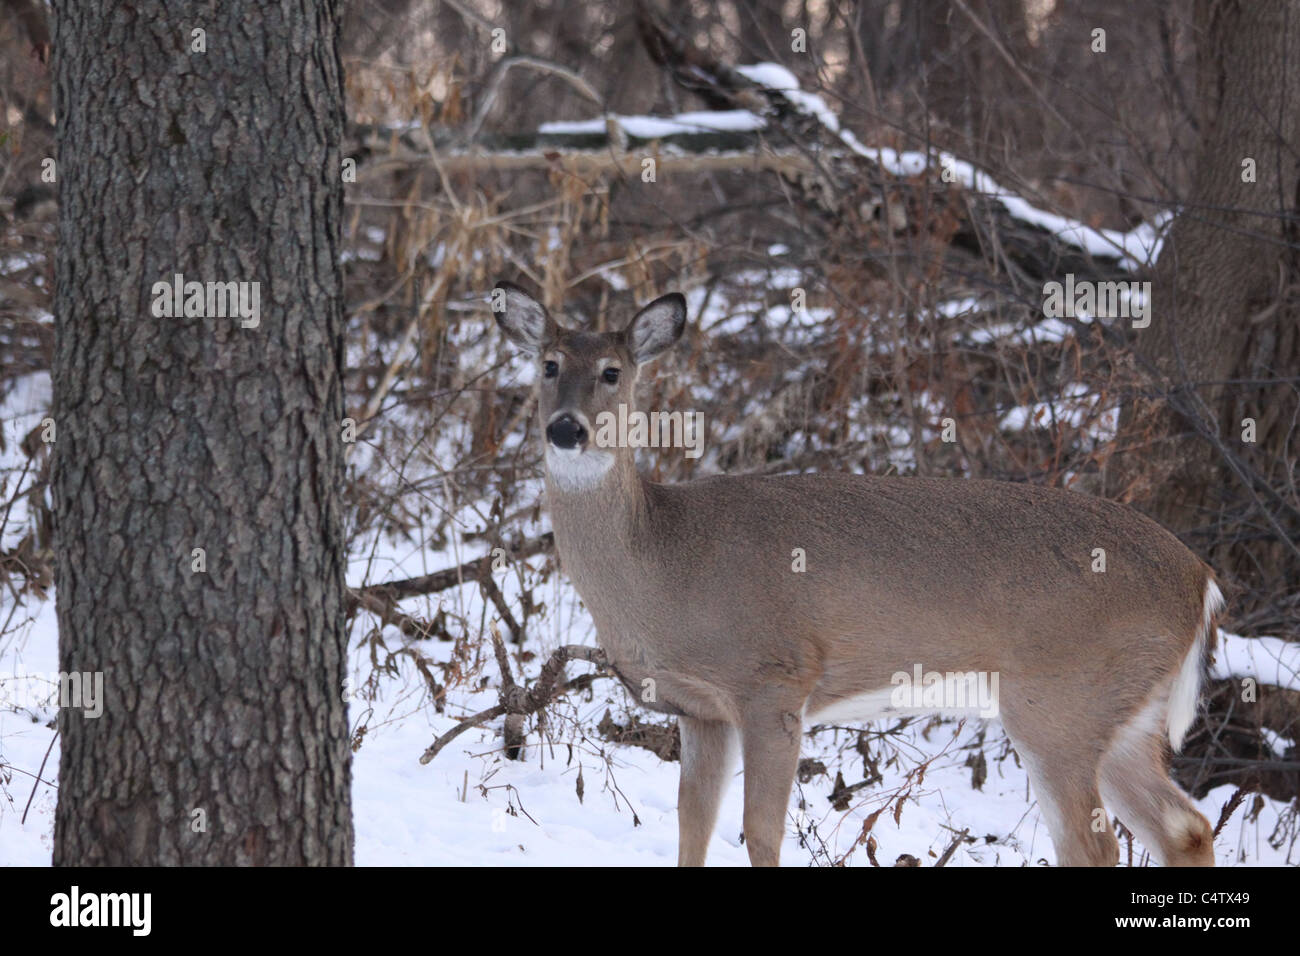 Los venados de cola blanca de pie en la nieve en el bosque de invierno Foto de stock